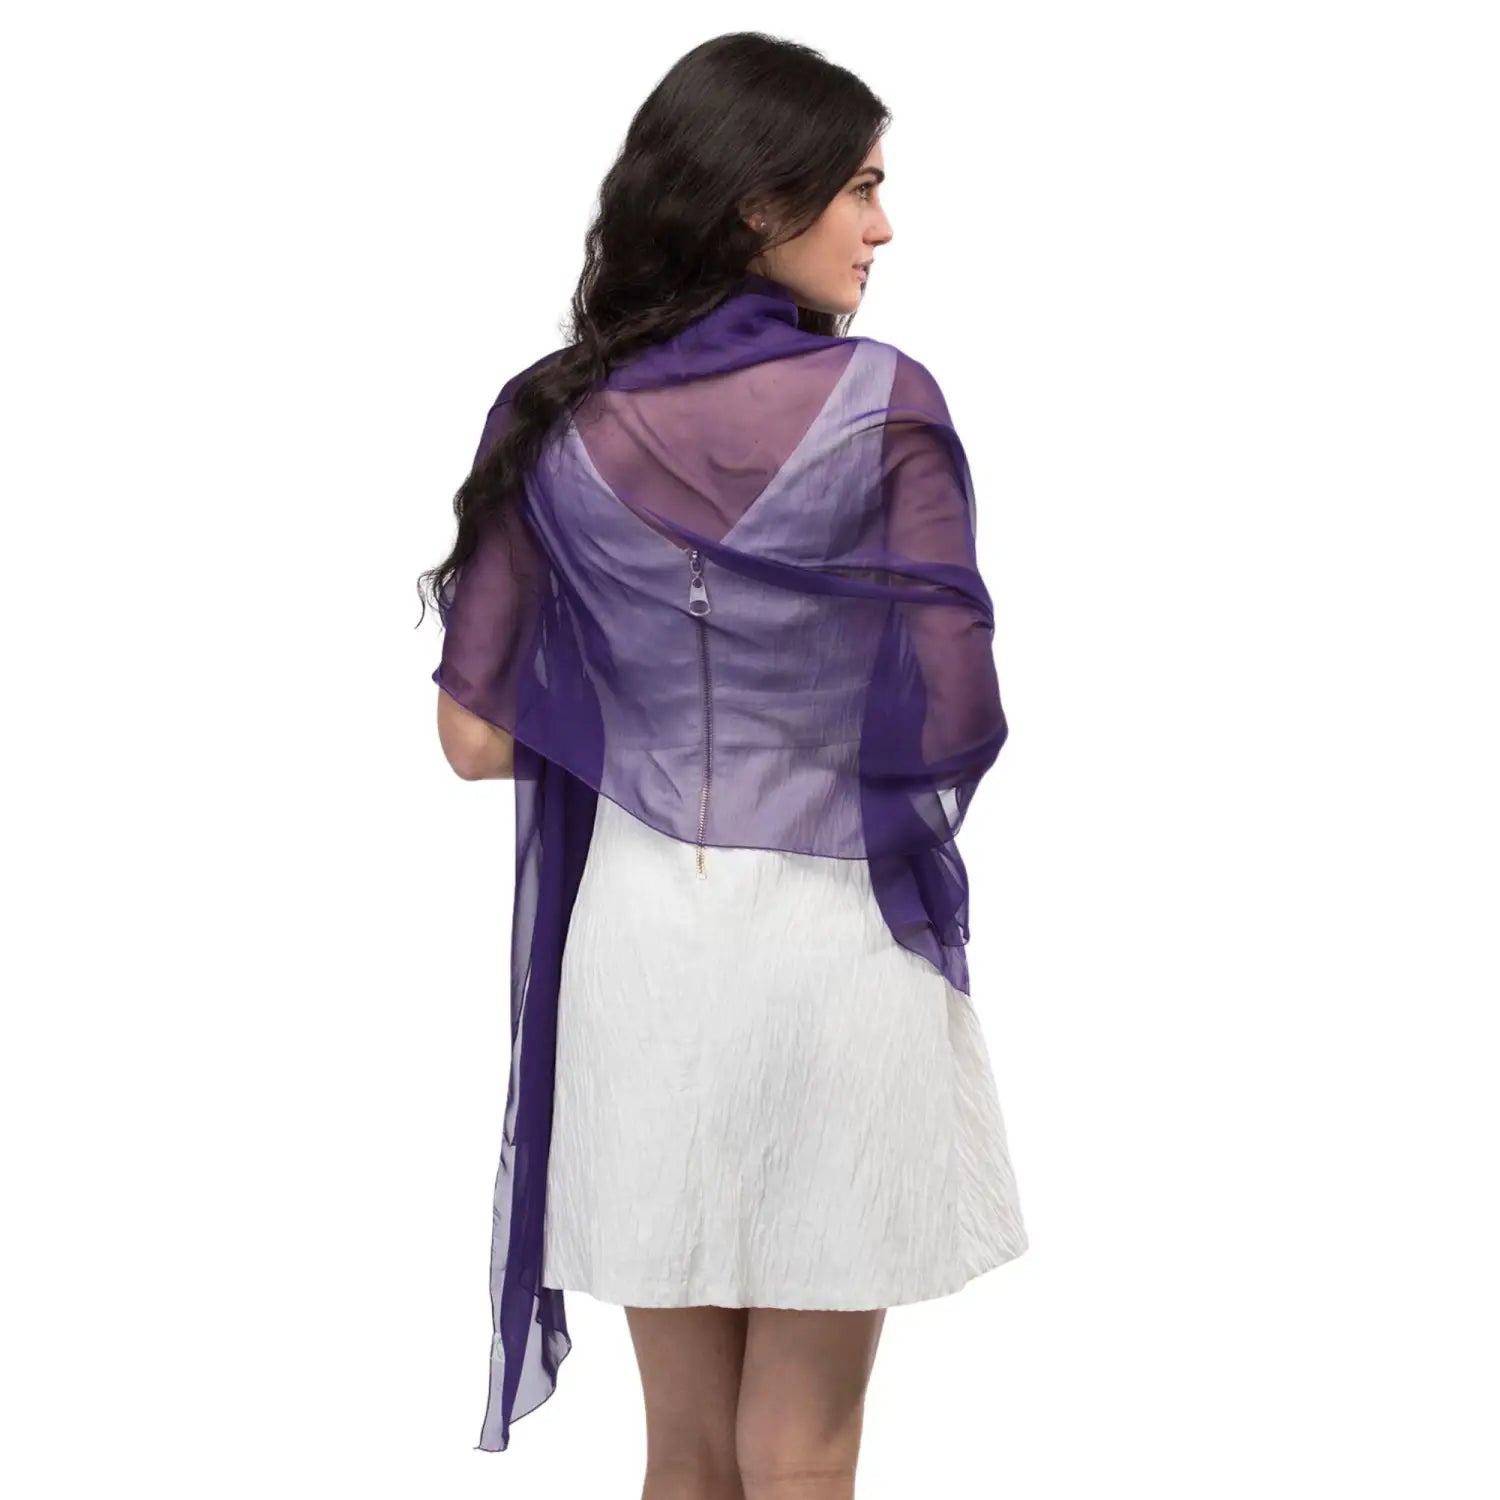 Woman wearing purple chiffon shawl from the Plain Chiffon Shawl Semi-Opaque - Versatile Scarf product